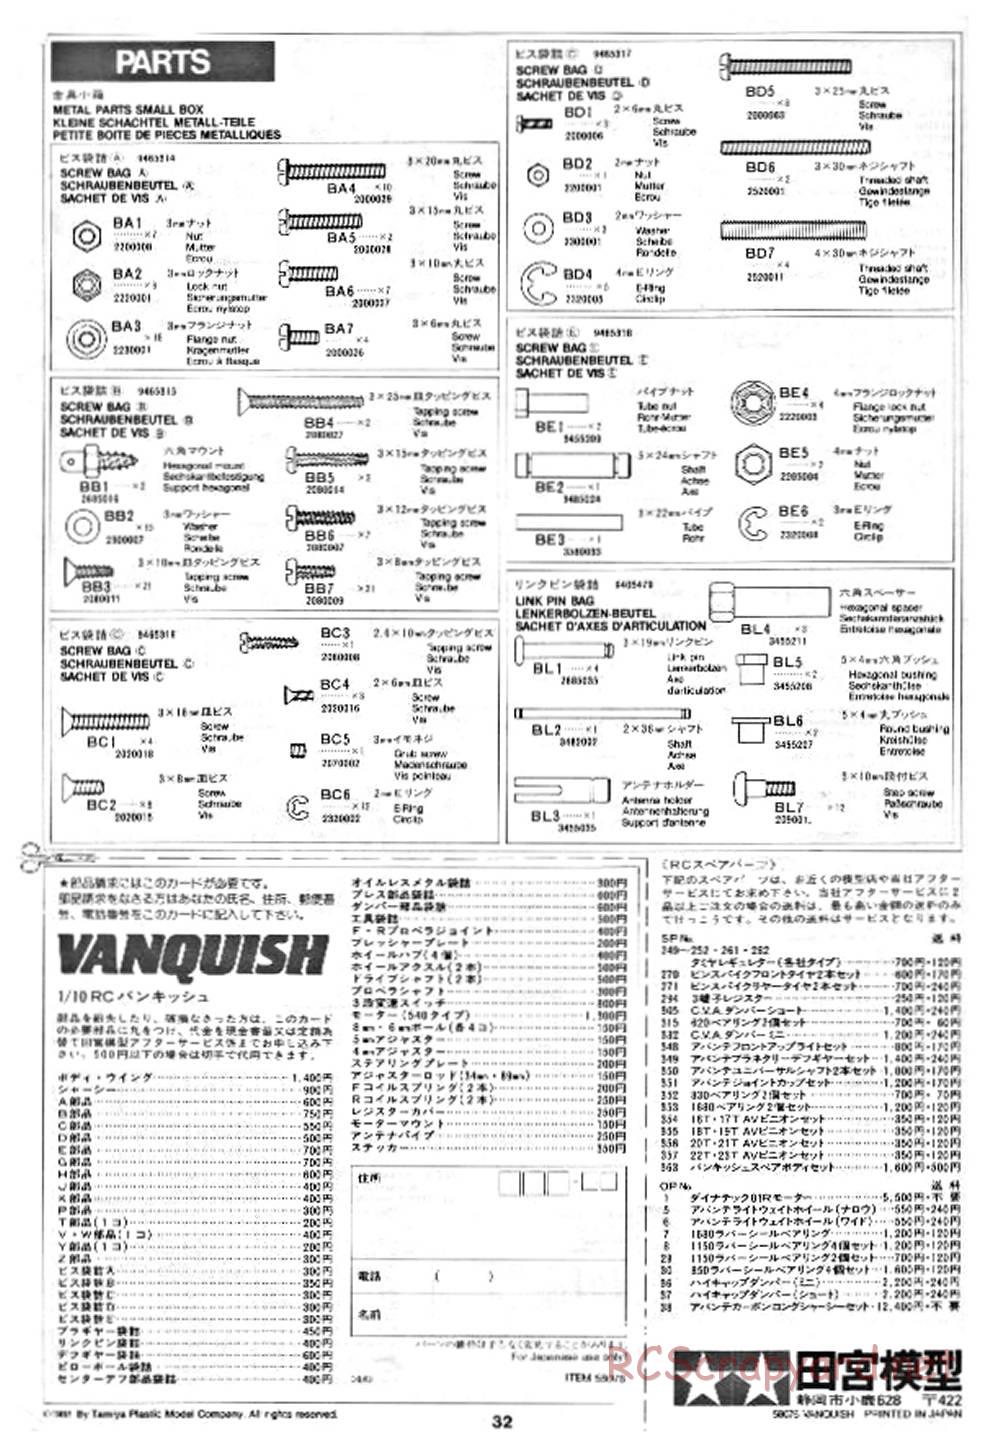 Tamiya - Vanquish - 58076 - Manual - Page 32